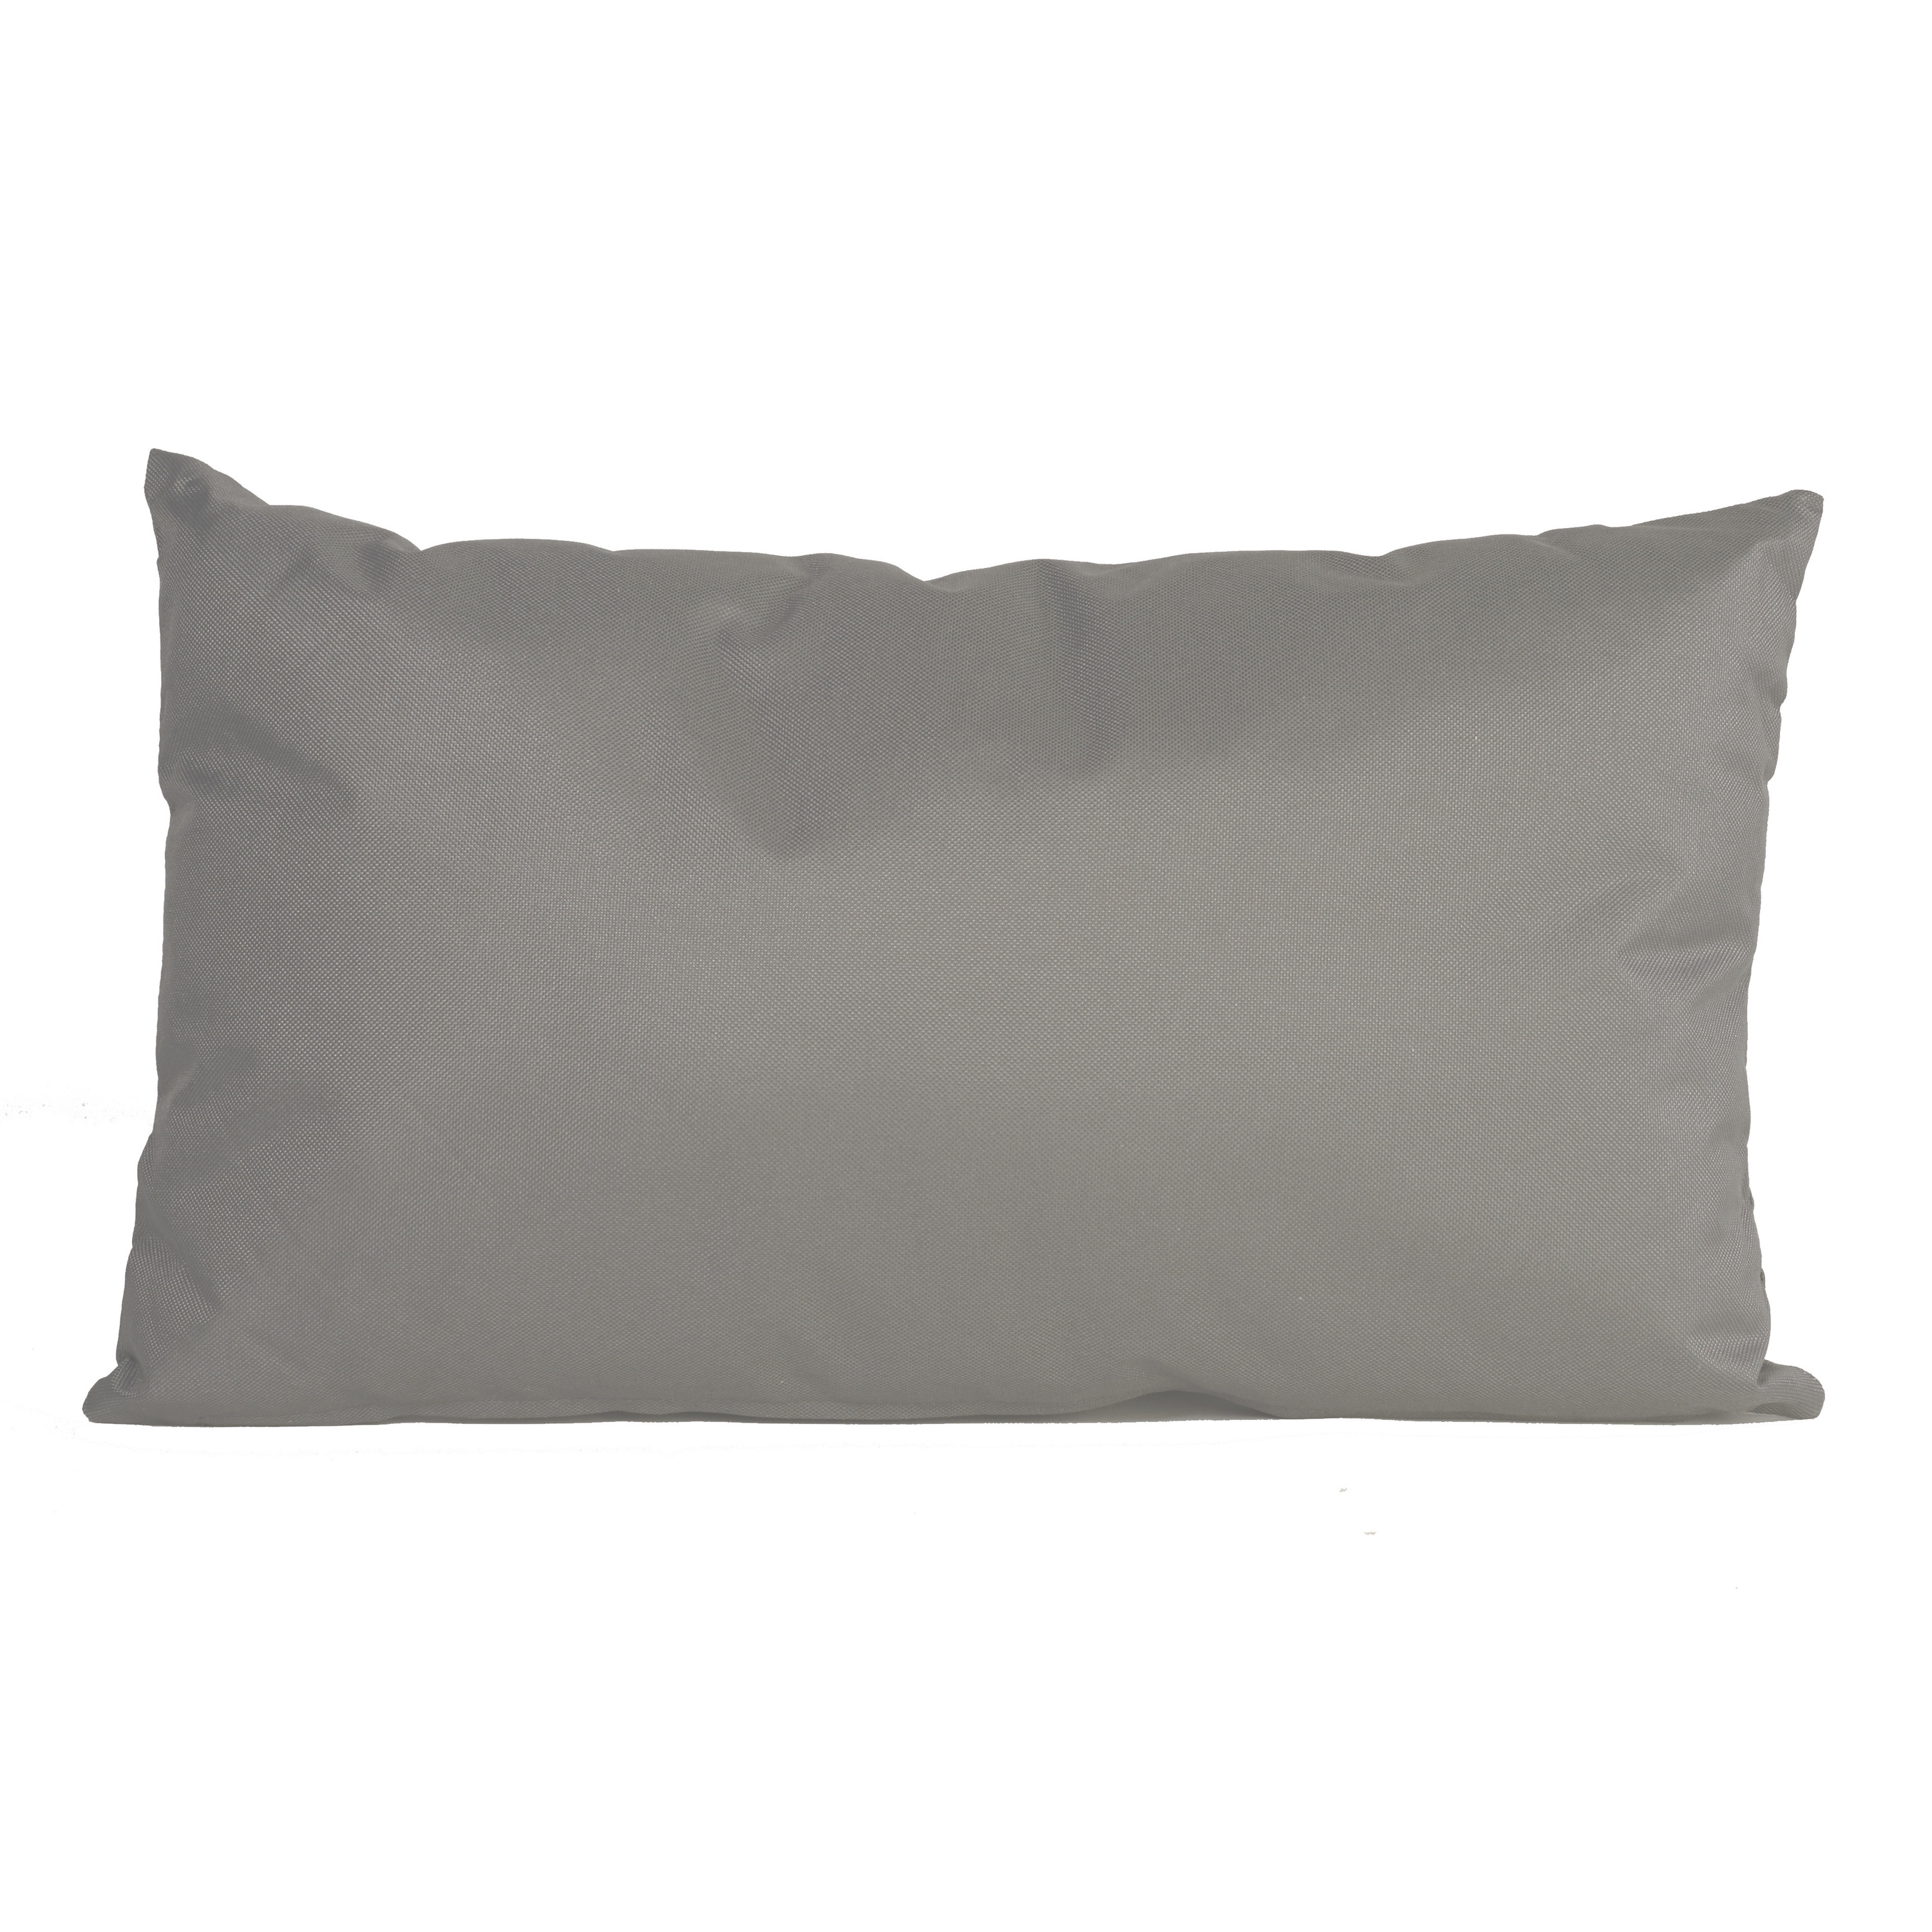 Bank-sier kussens voor binnen en buiten in de kleur grijs 30 x 50 cm